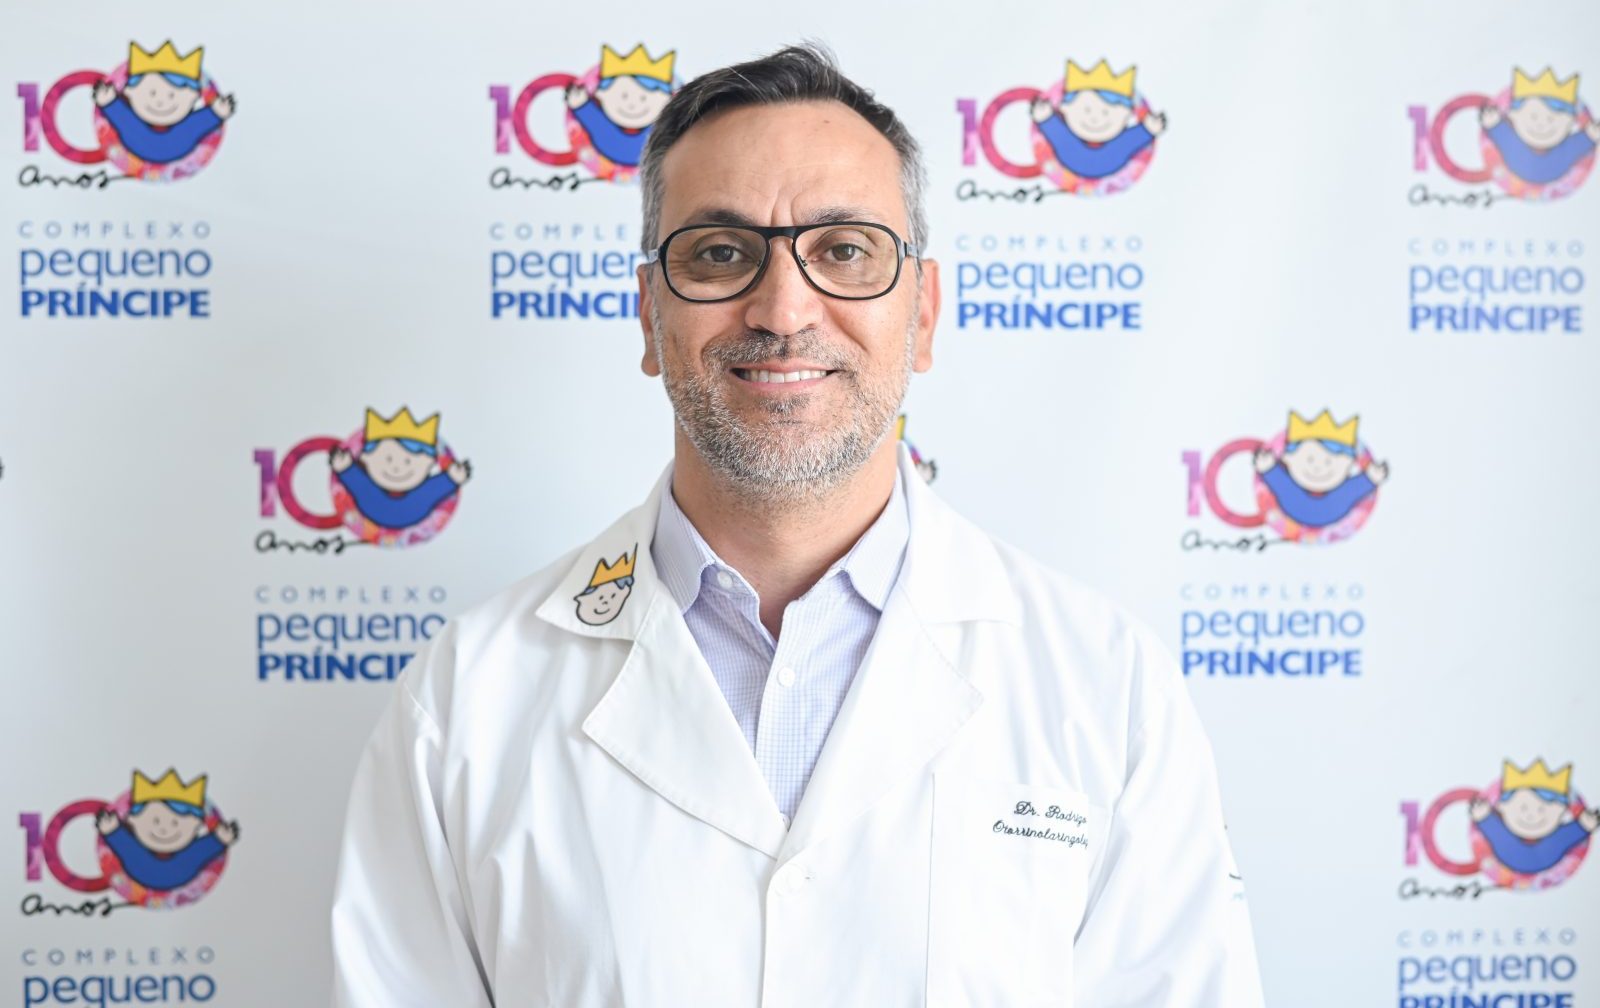 Dr. Rodrigo Guimarães Pereira